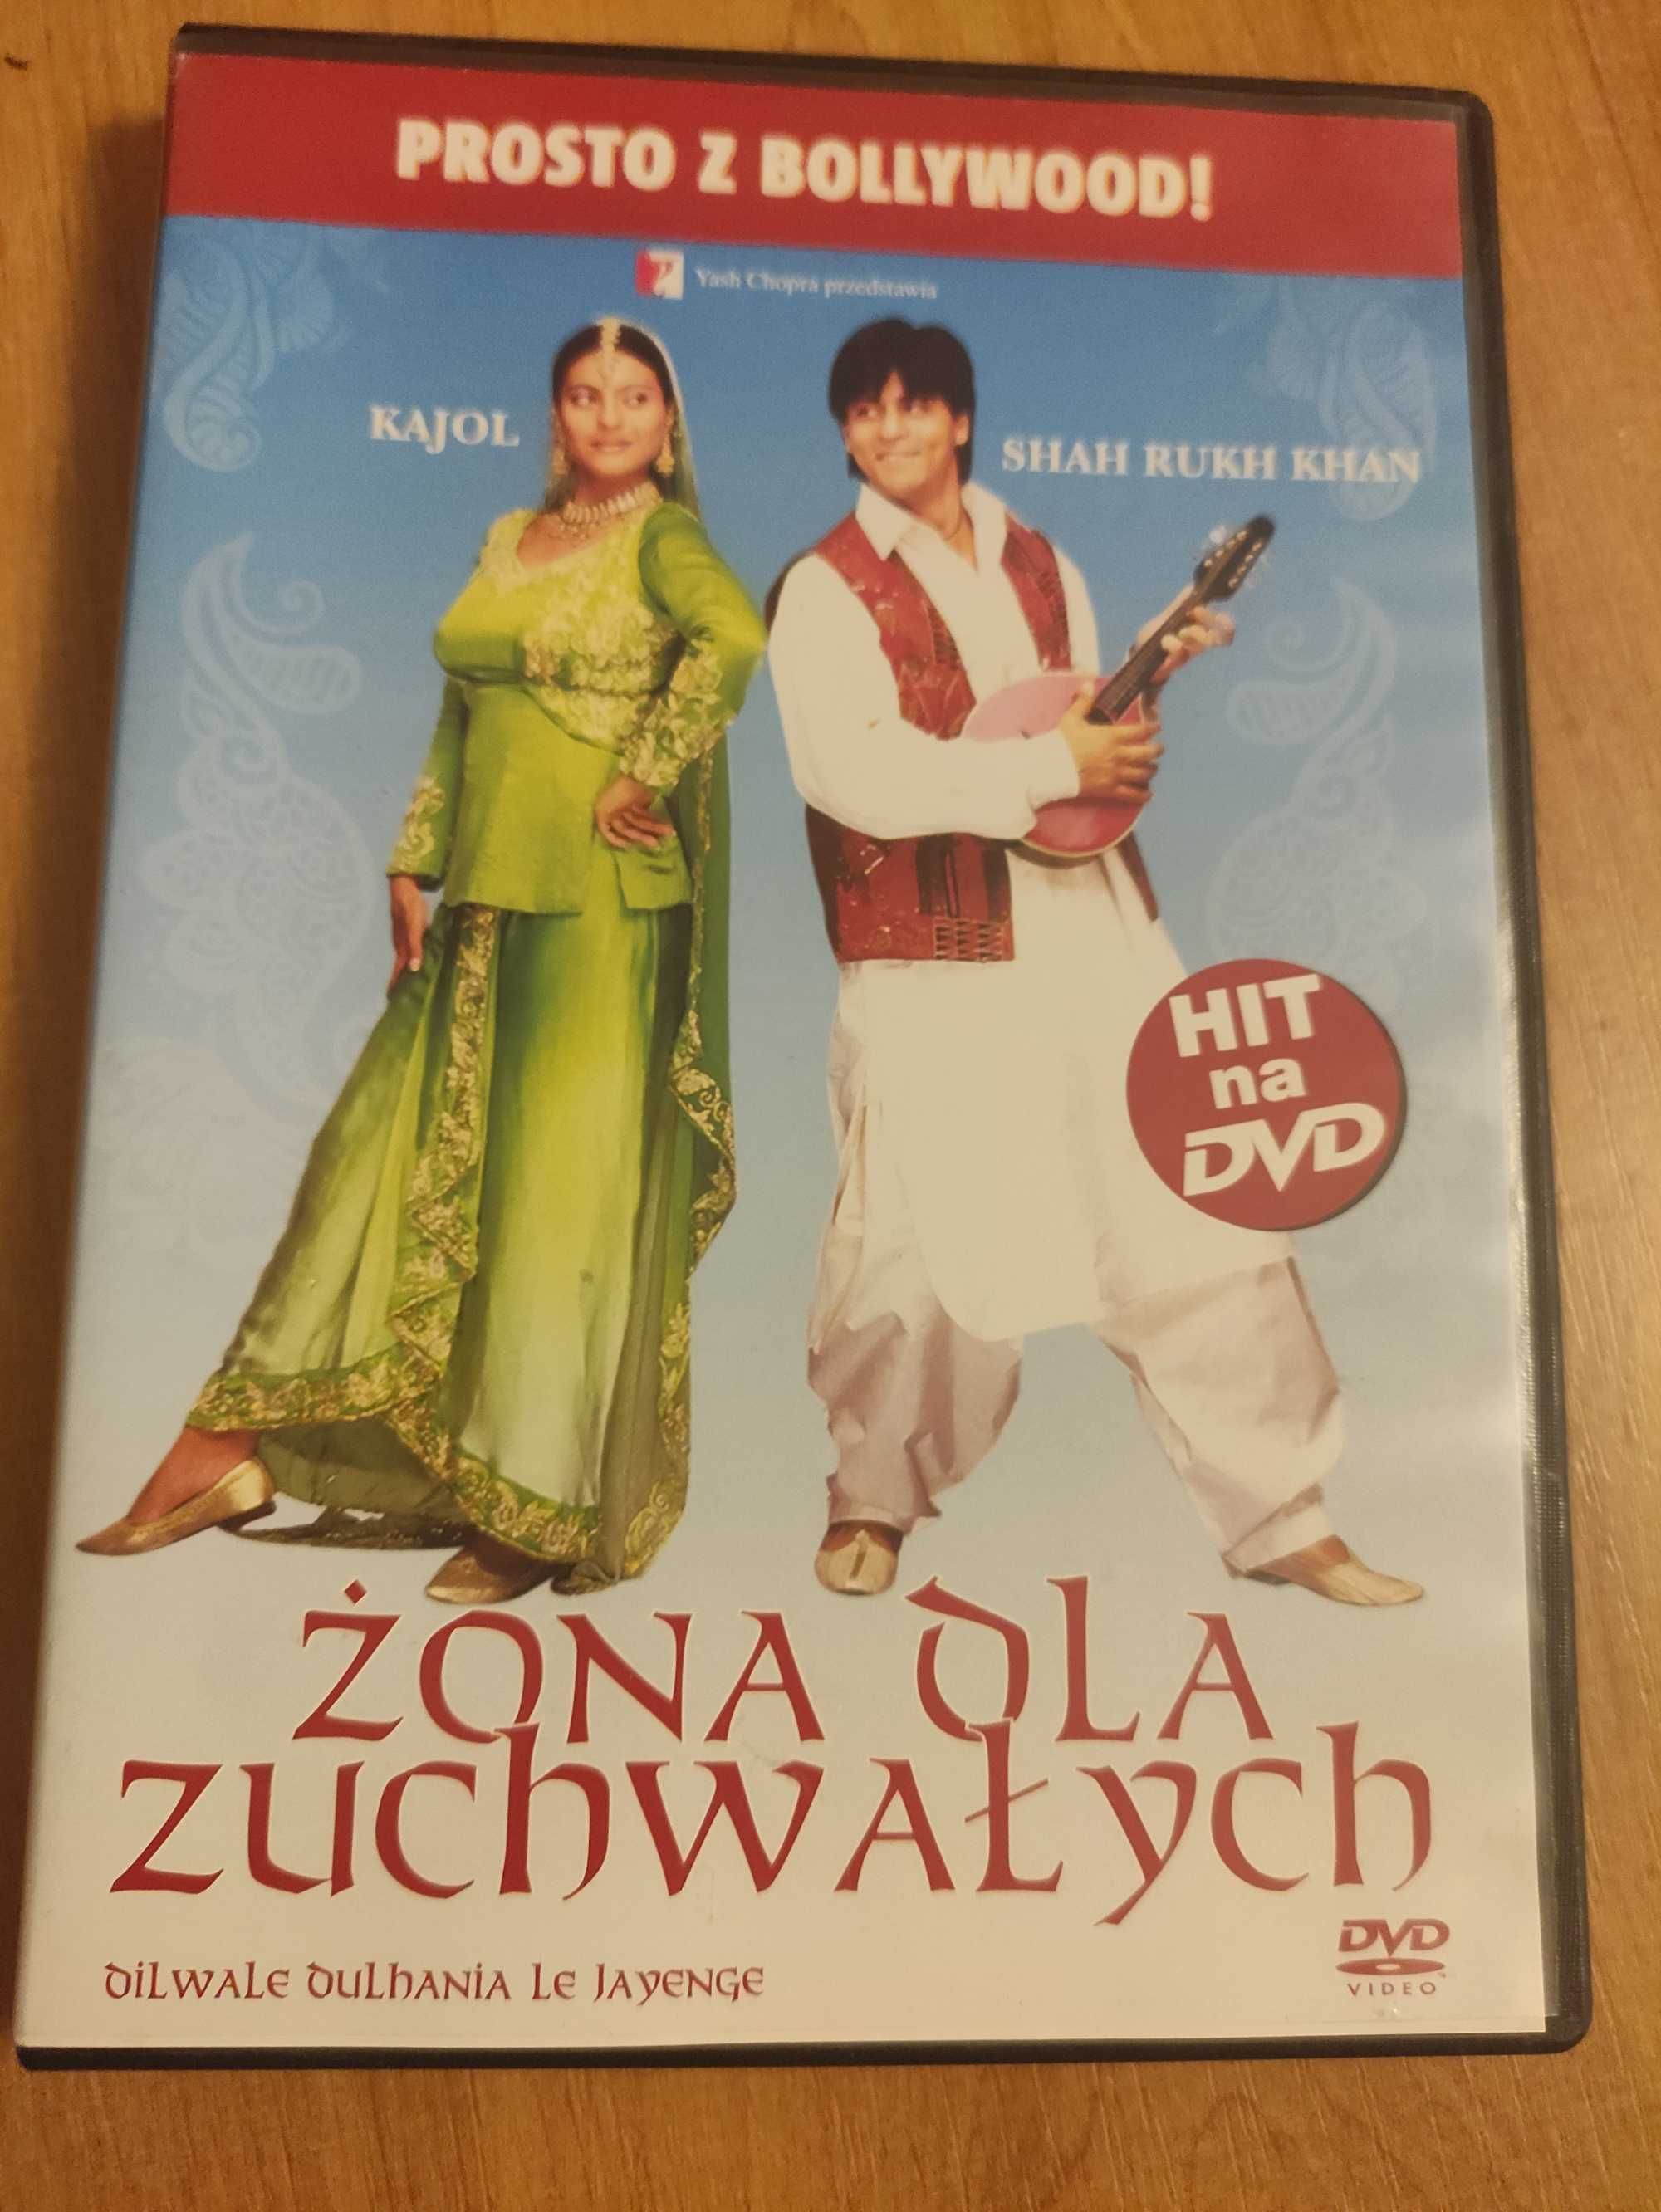 Płyta DVD Bollywood,, Żona dla zuchwałych "